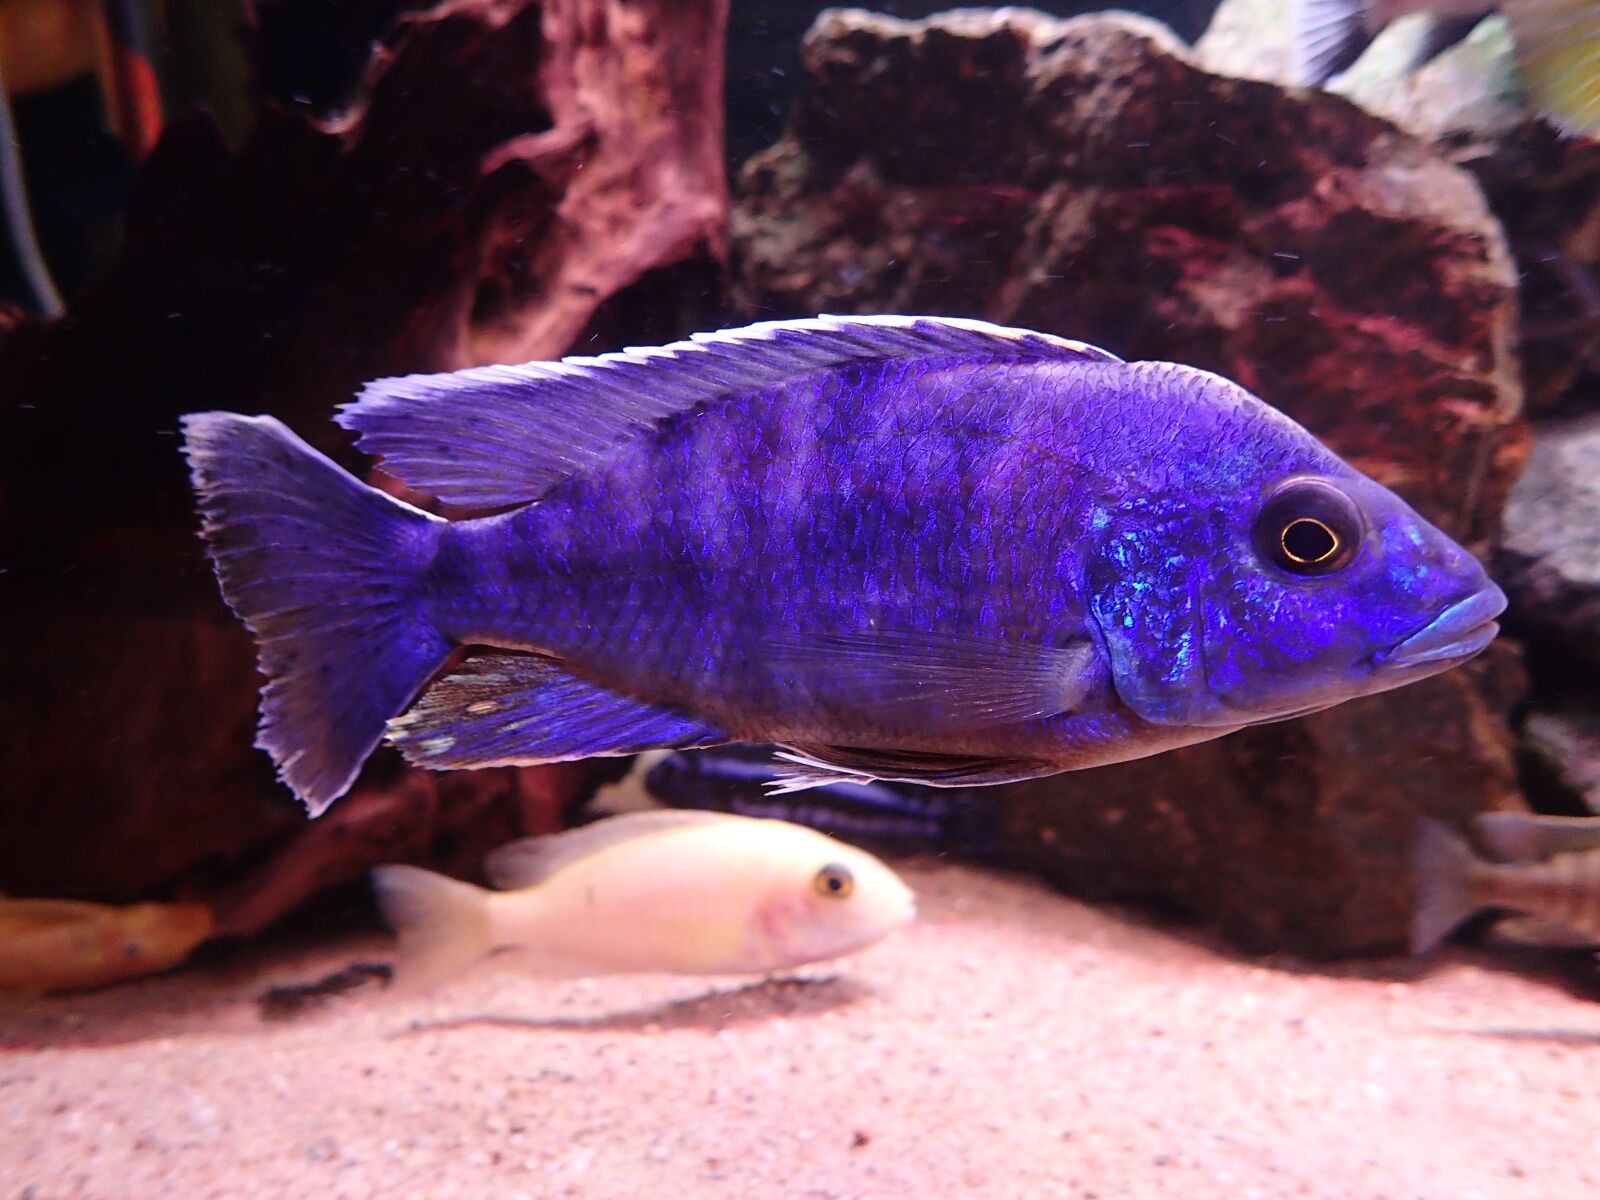 Olympus TG-3 sample photo. Fish, aquarium, freshwater photography